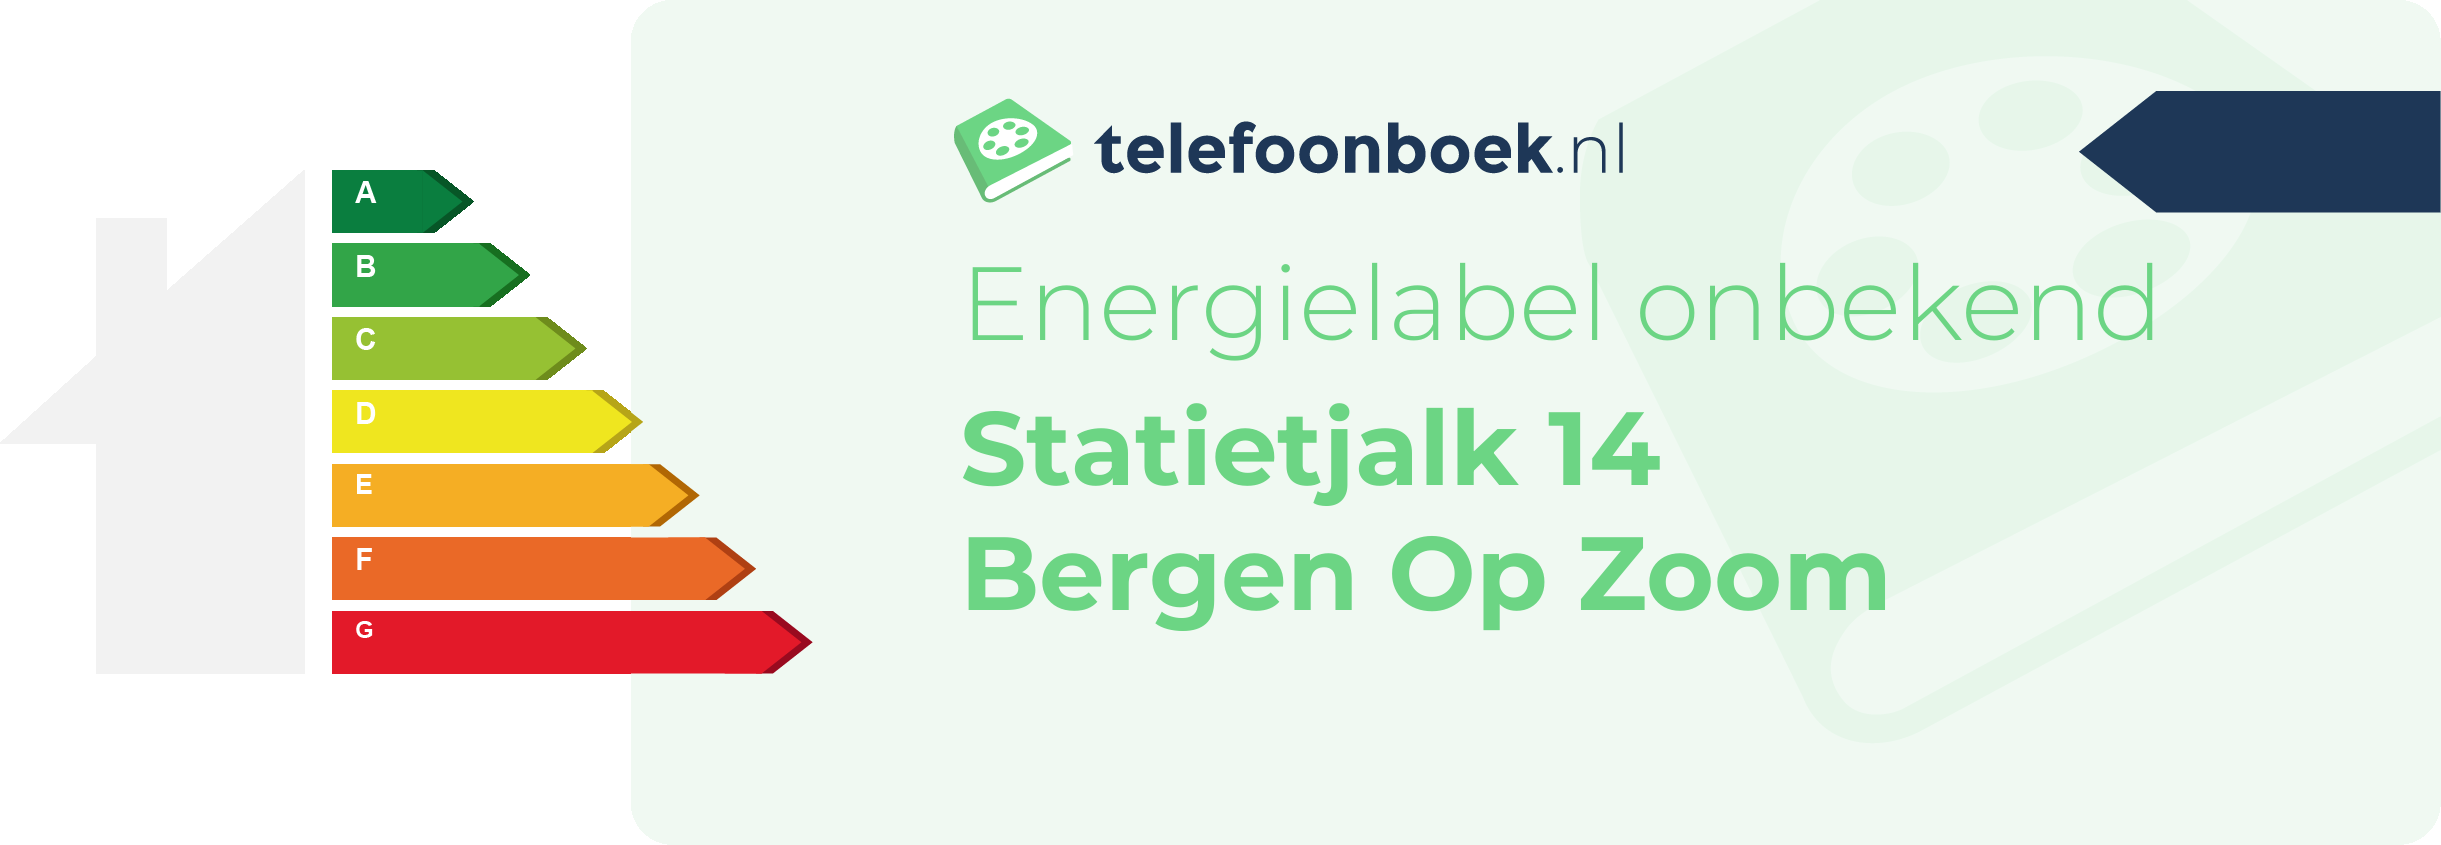 Energielabel Statietjalk 14 Bergen Op Zoom